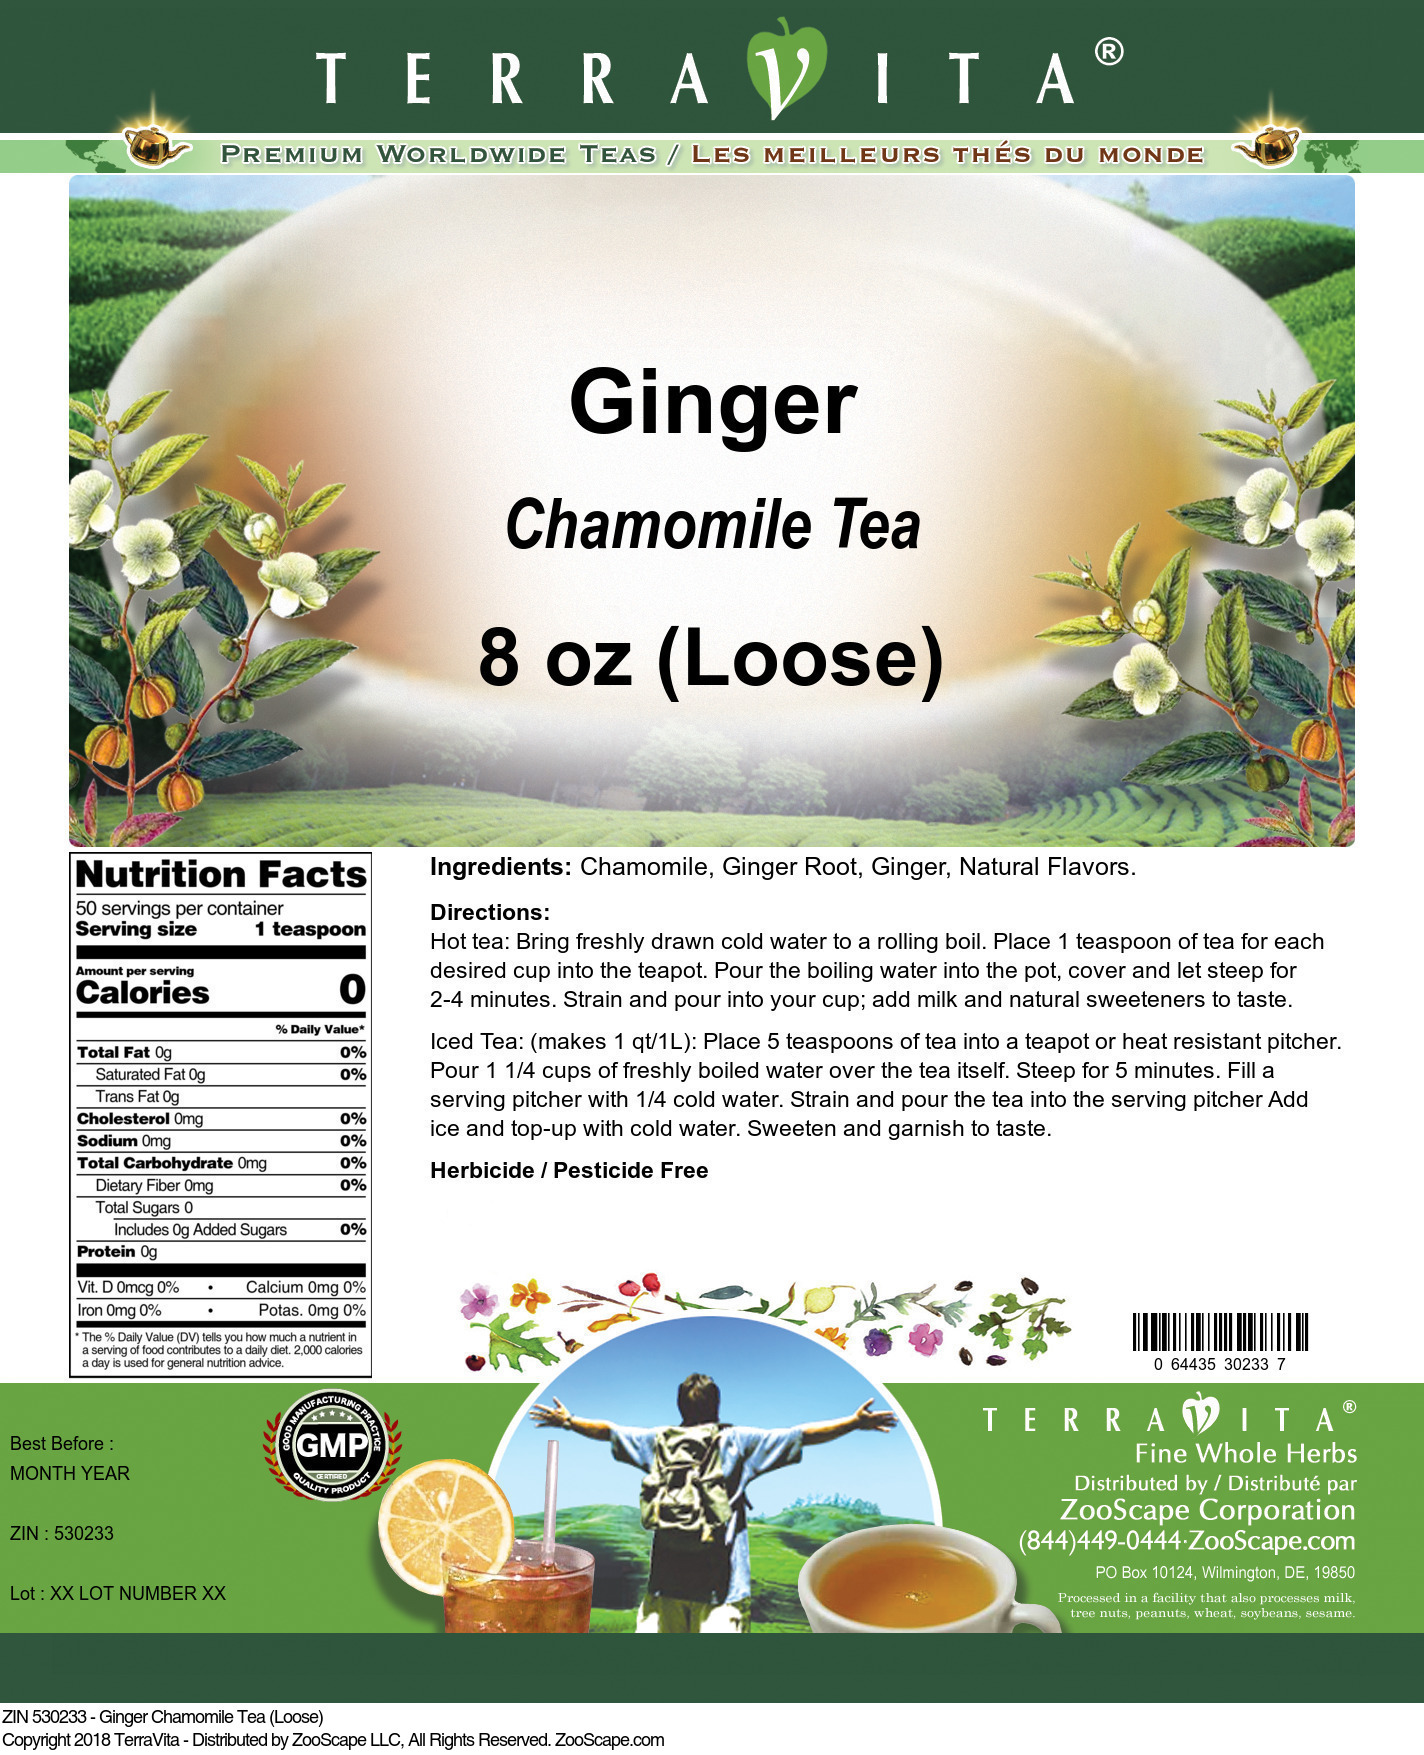 Ginger Chamomile Tea (Loose) - Label